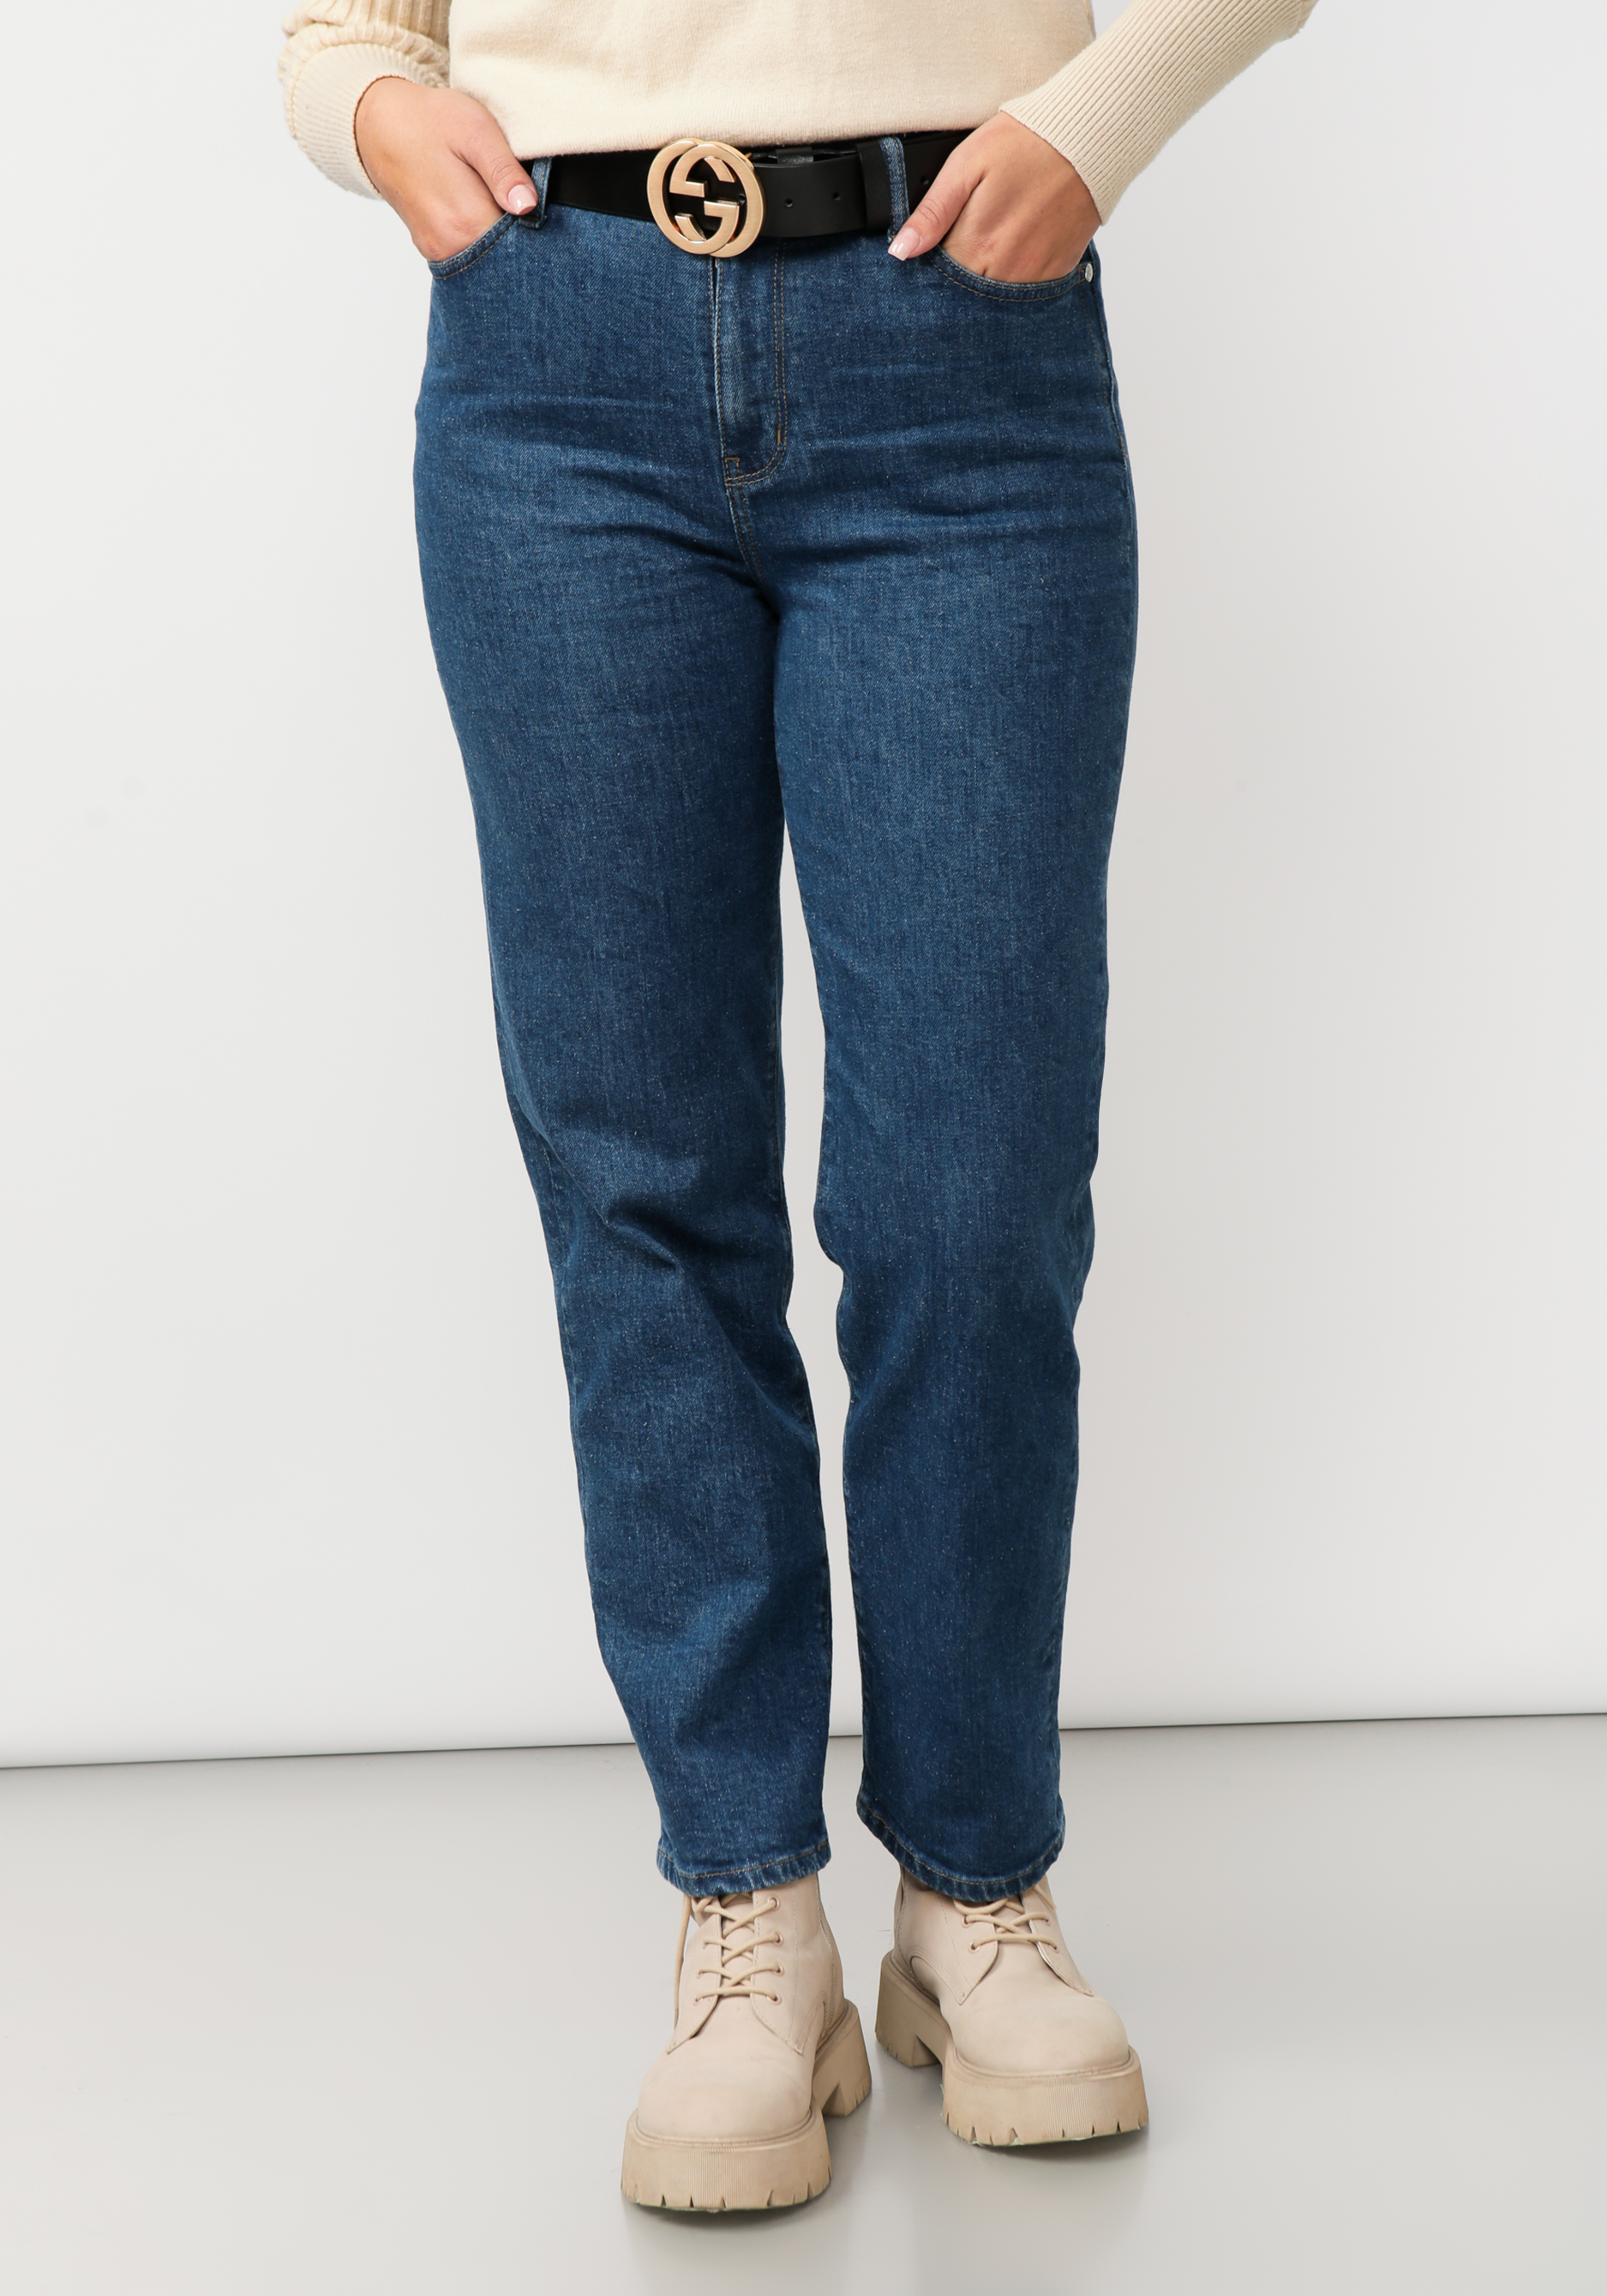 Джинсы прямого кроя с вышивкой на кармане жен джинсы арт 12 0086 голубой р 25